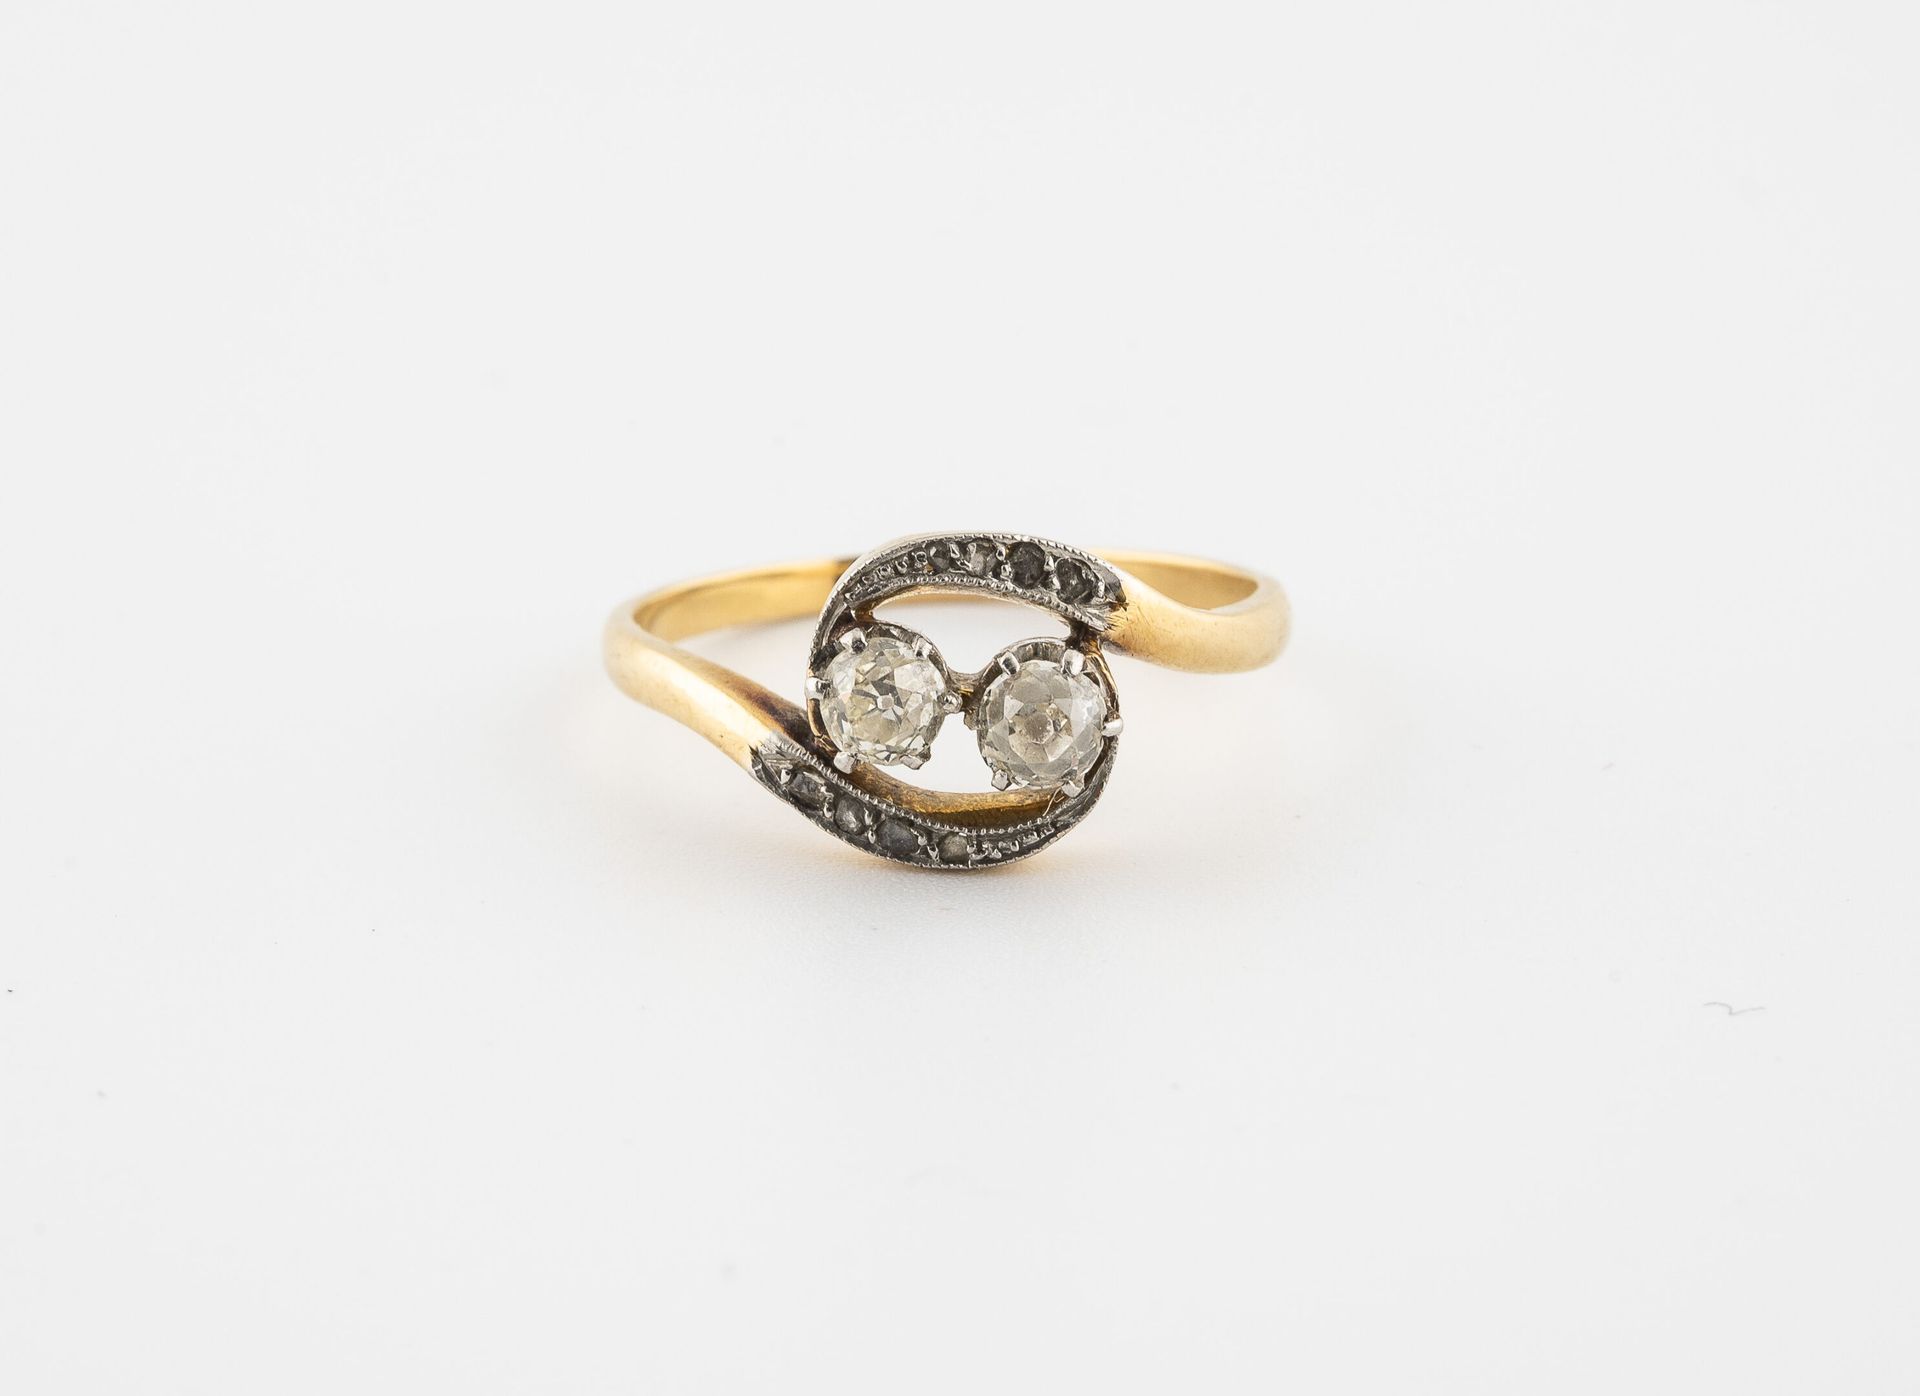 Null 一枚黄金（750）和铂金（850）戒指，拥有两颗爪镶老式切割钻石和两条蜿蜒的种子镶嵌的玫瑰切割钻石。

毛重：2.7克。- 手指大小：56。

刮伤。